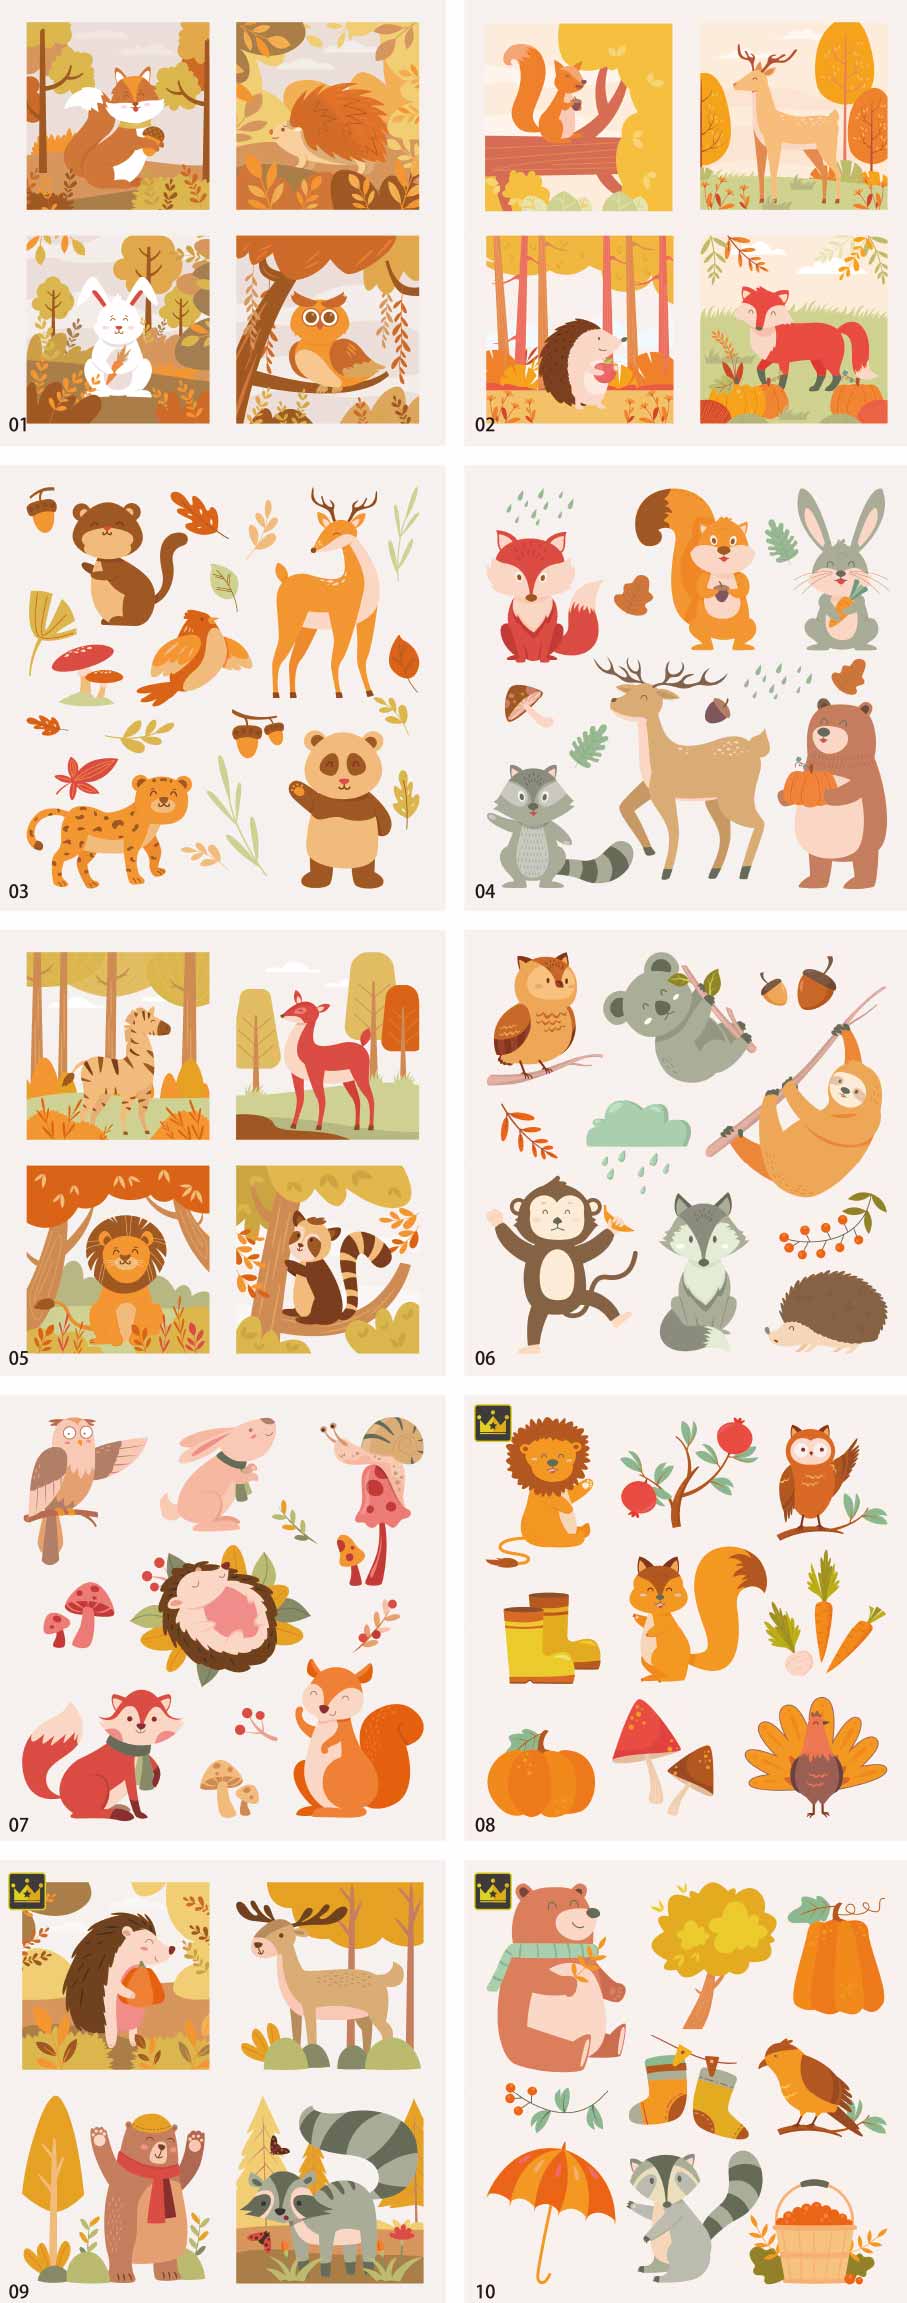 Bộ sưu tập minh họa động vật mùa thu